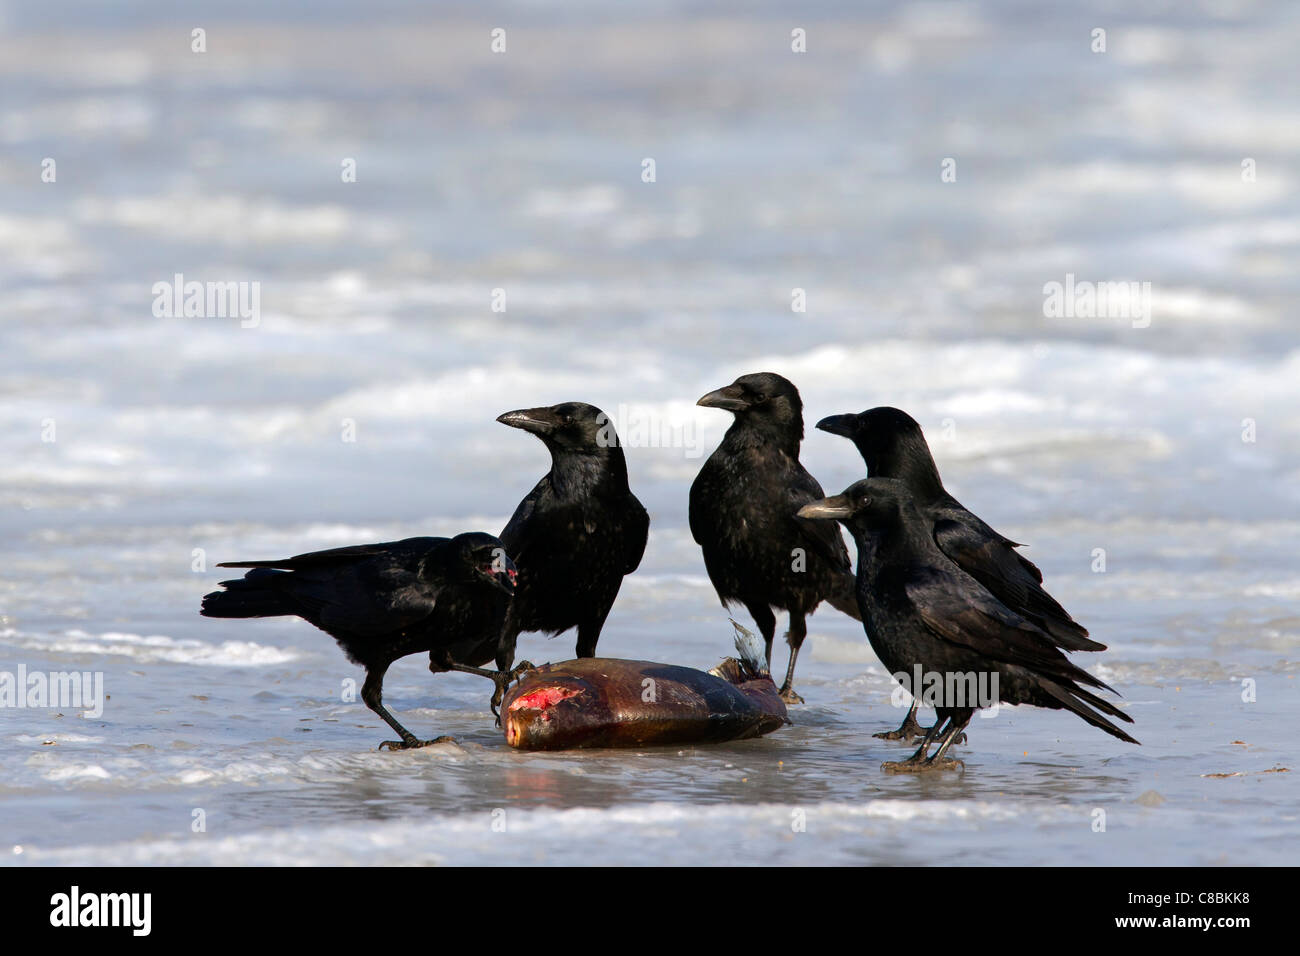 Gregge di Carrion crows (Corvus corone) alimentazione di pesce sul lago ghiacciato in inverno, Germania Foto Stock